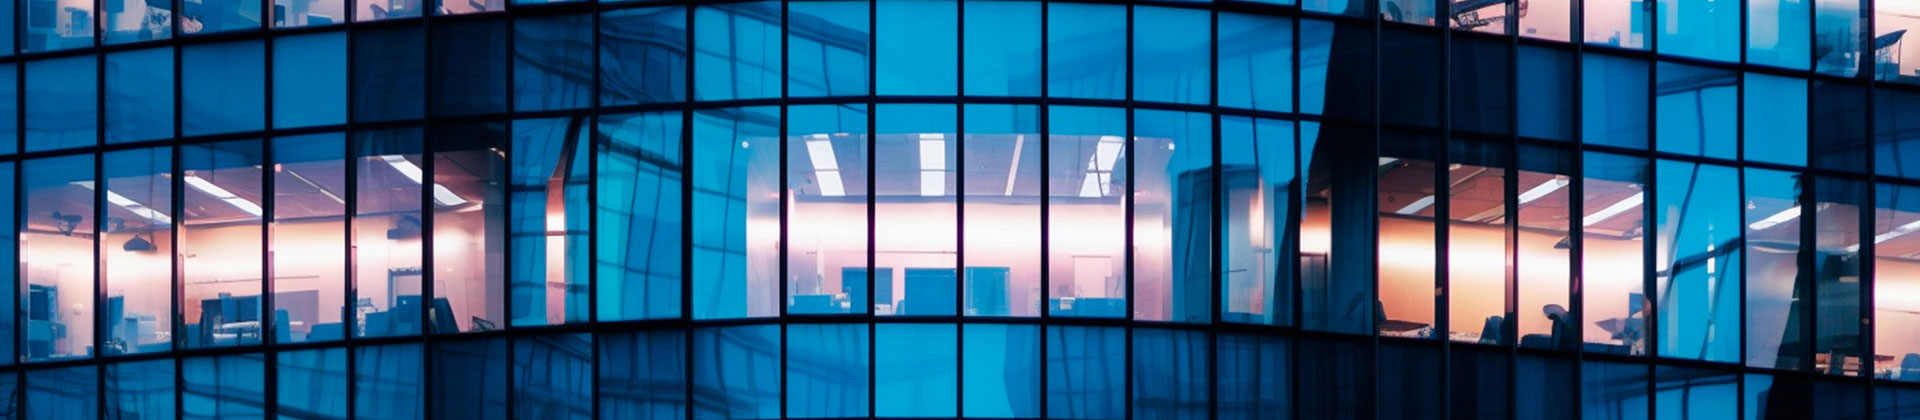 Vista nocturna del edificio de oficinas con ventanas iluminadas